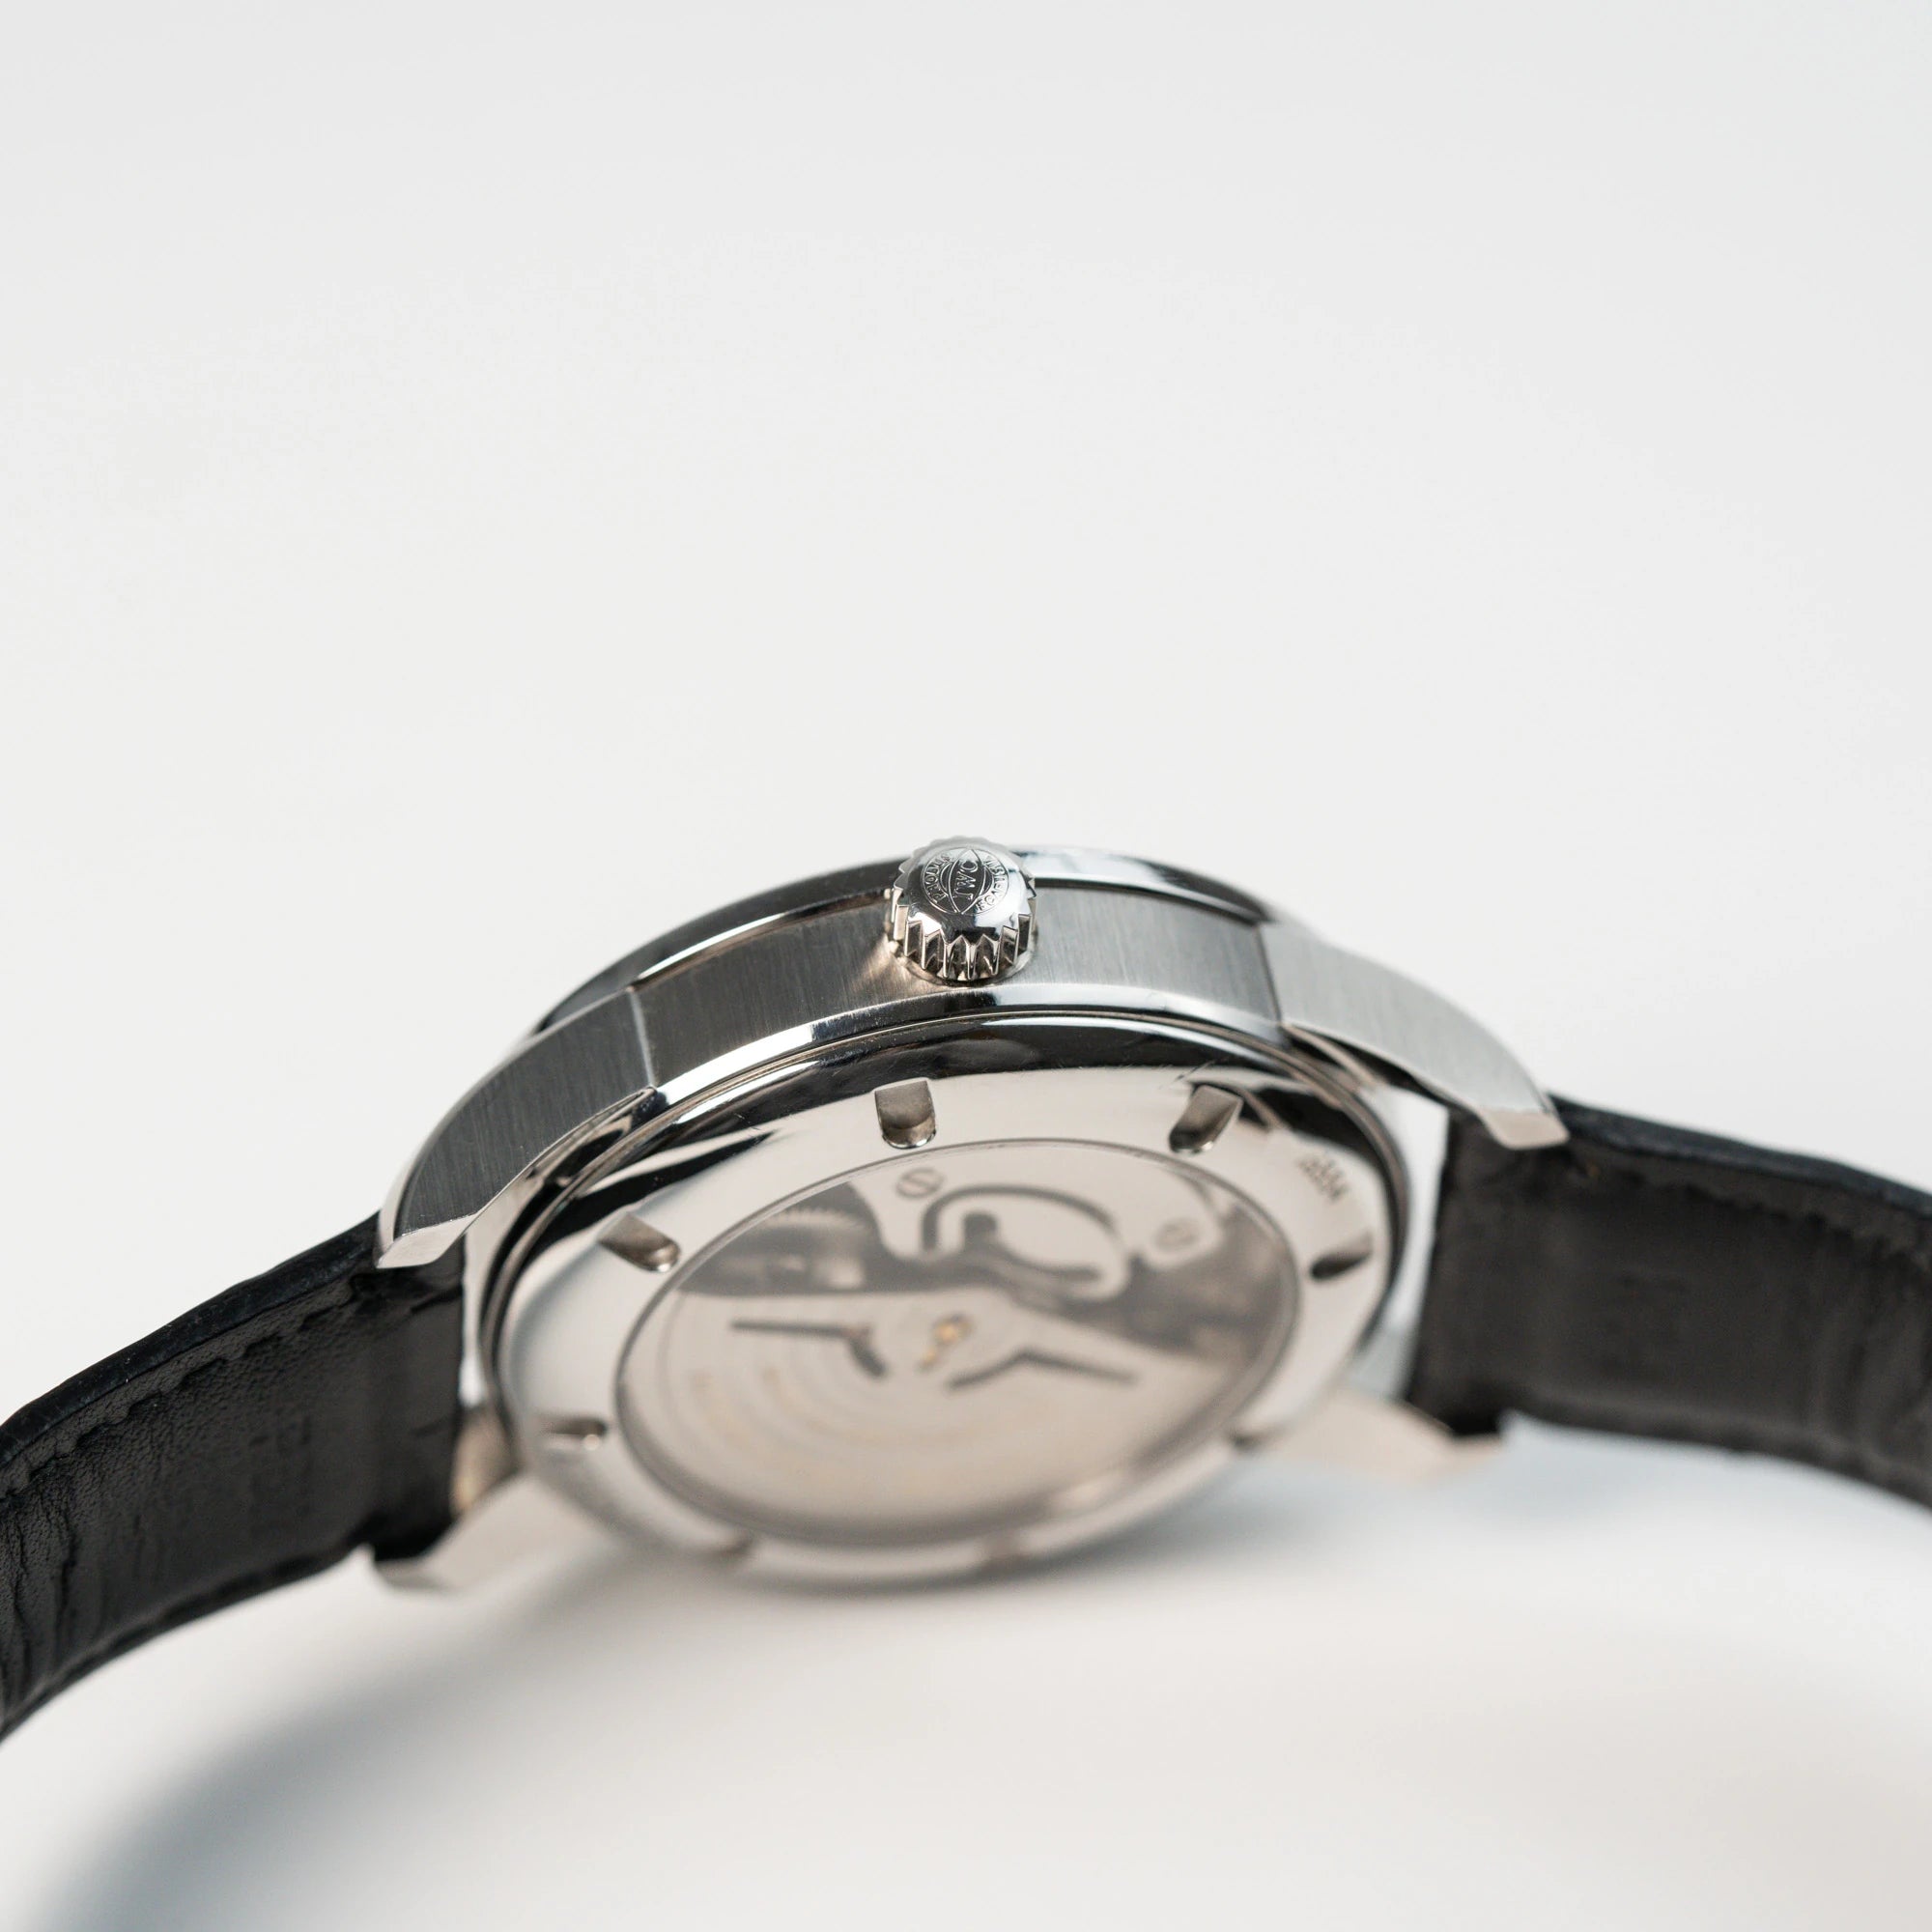 Seitliches Gehäuse mit Krone der IWC Schaffhausen Uhr "Ingenieur" mit der Referenz IW323301